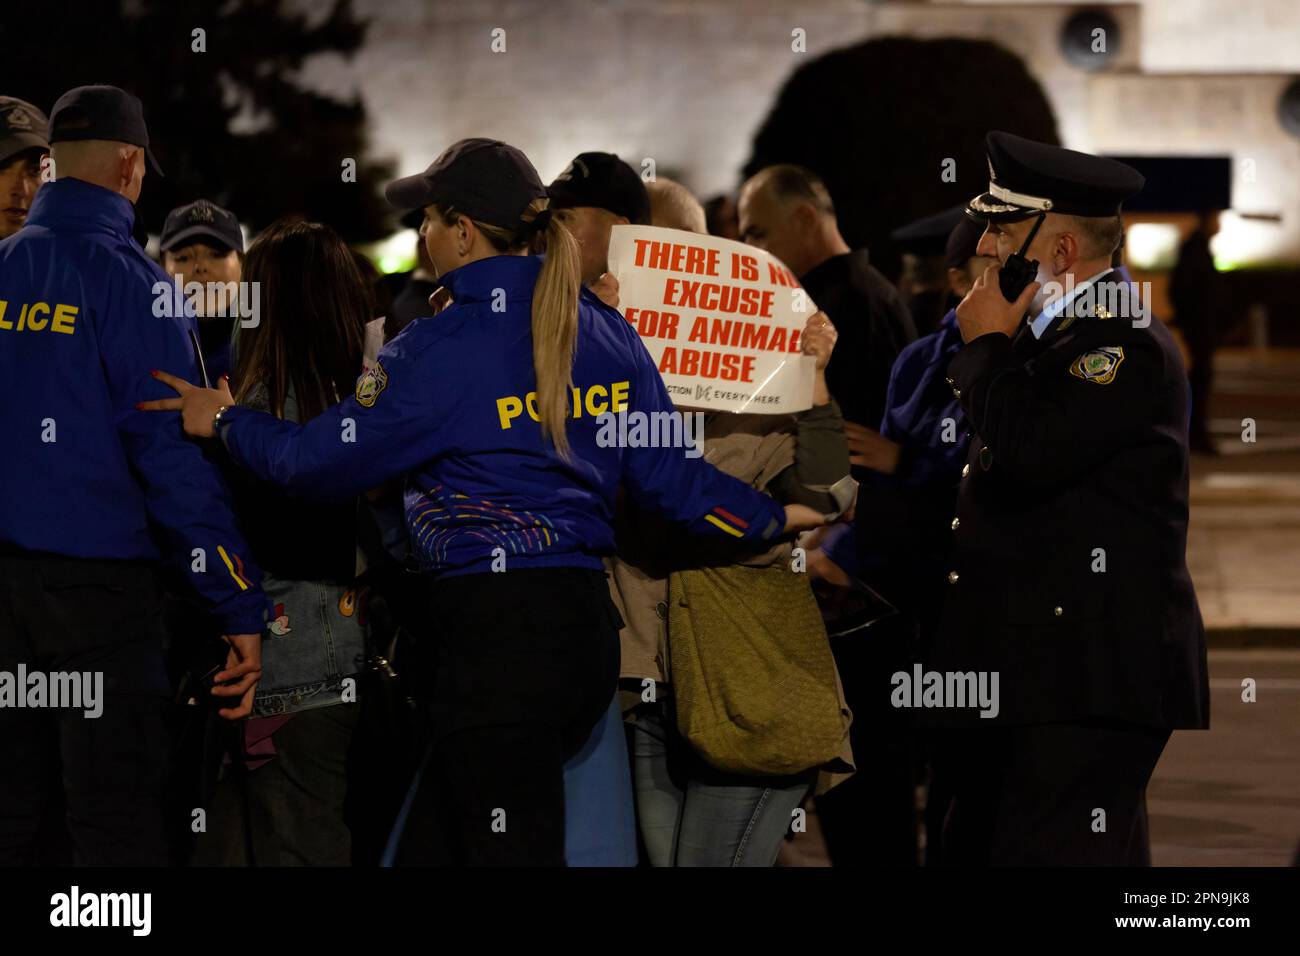 Protest veganischer Aktivisten gegen Tiermissbrauch und Fleischkonsum während der Osterfeierlichkeiten, während Polizisten in blauer Uniform sie zurückdrängen. Stockfoto